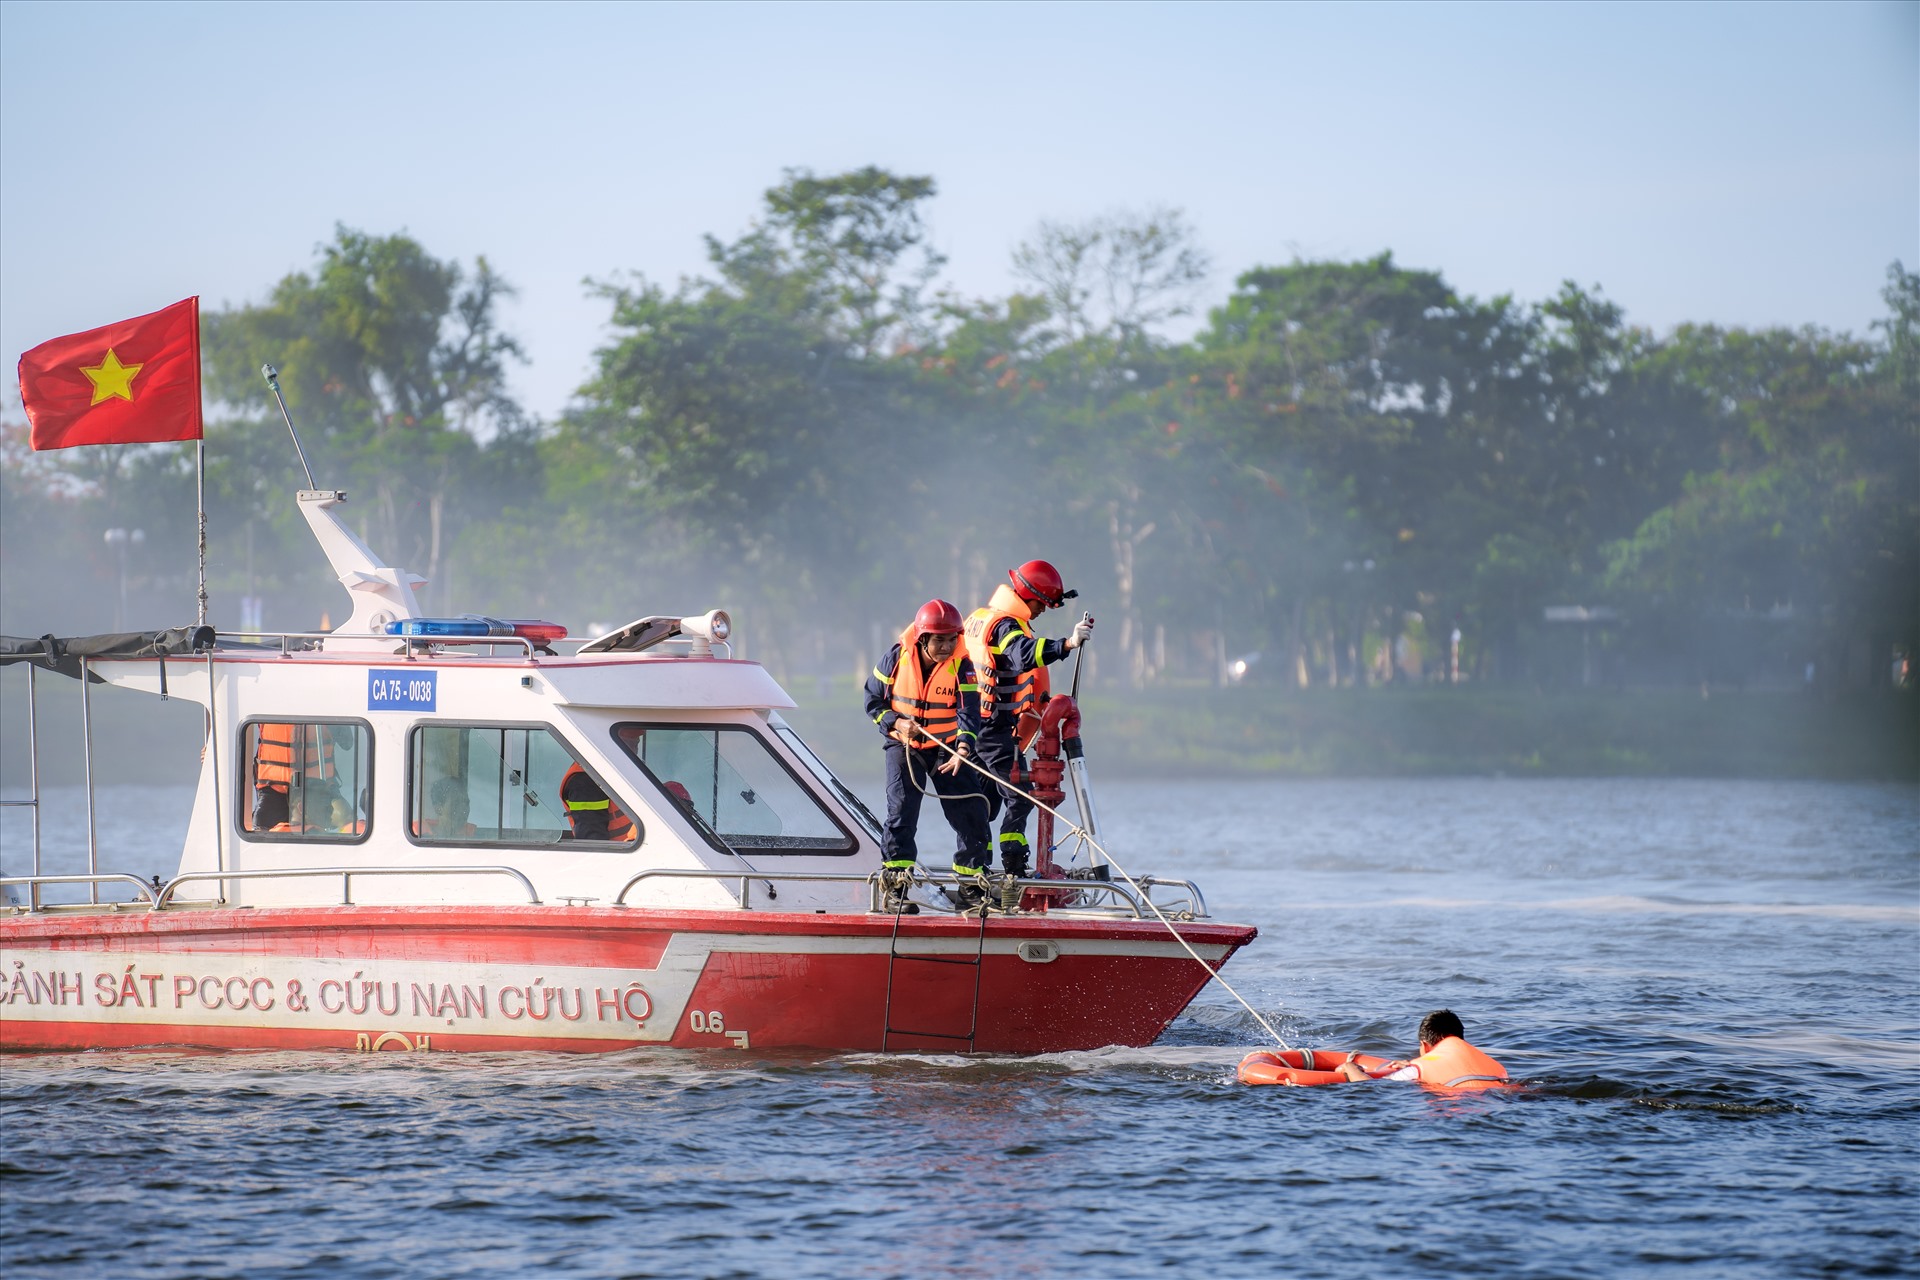 Sau khi được tin, lực lượng chức năng đã nhanh chống triển khai cứu nạn, cứu hộ, những nạn nhân gặp nguy hiểm khi rơi xuống sông được người dân và lực lượng chức năng cứu hộ an toàn.